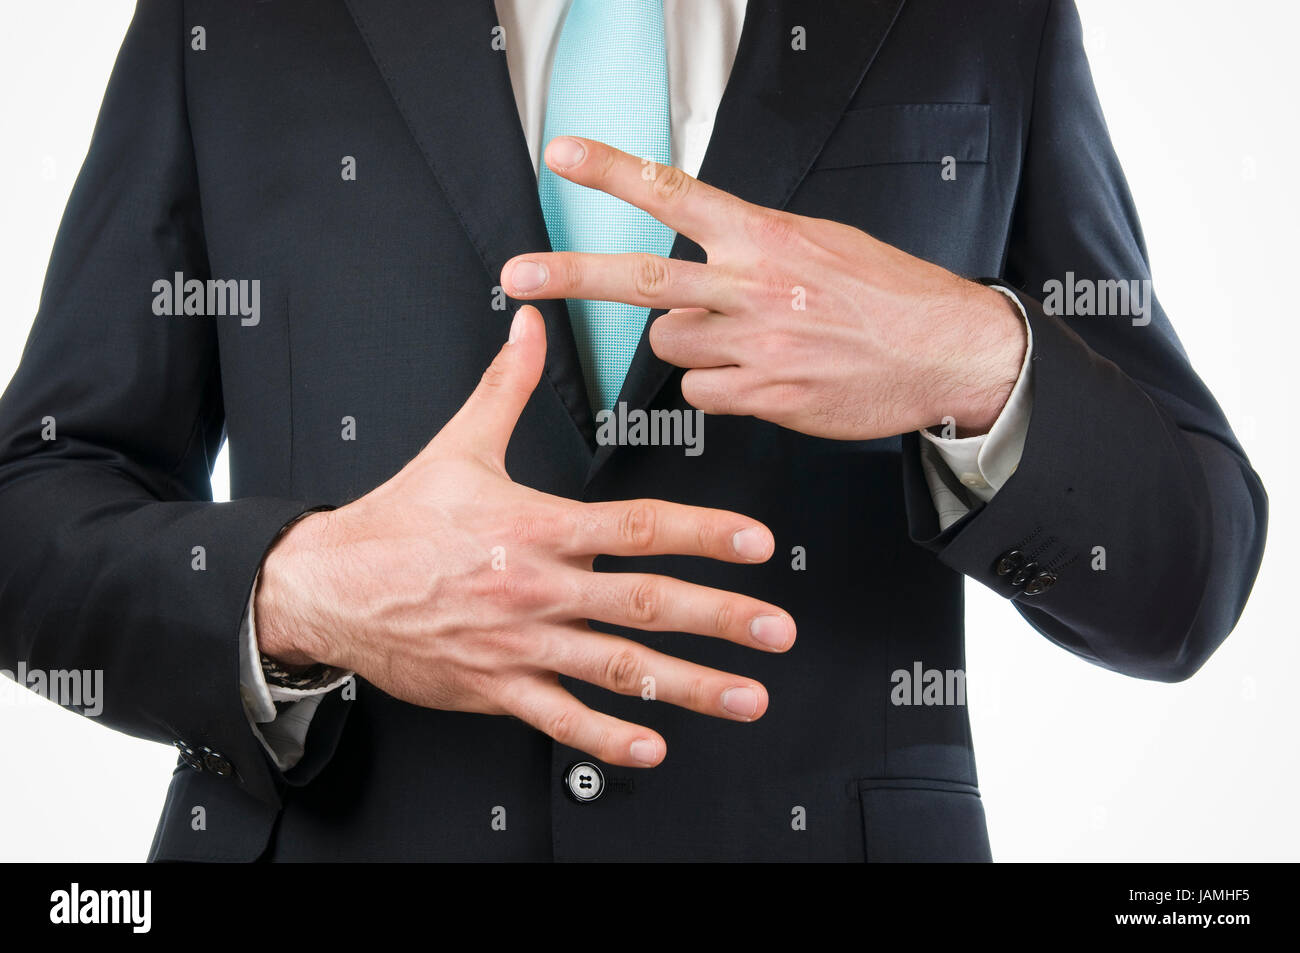 Brust-und-Bauch-Ansicht eines jungen Mannes im schwarzen Anzug mit vor sich gehaltenen Händen die '7' anzeigend (sieben dito) Foto Stock